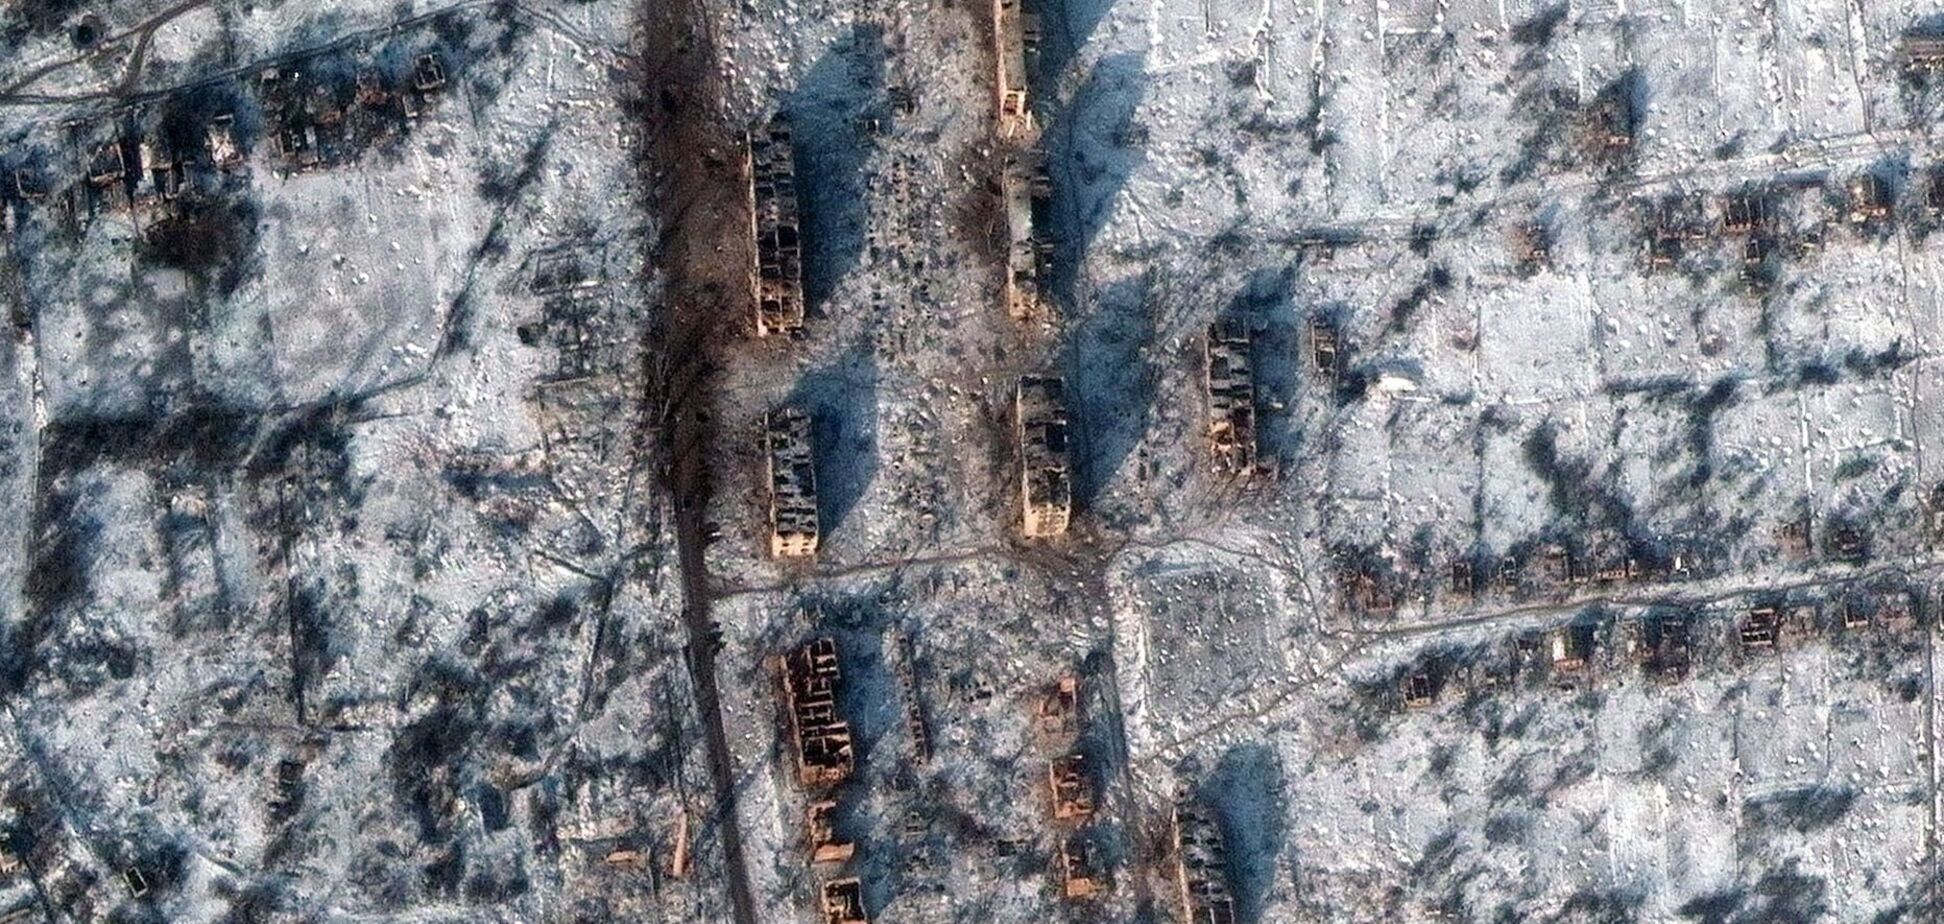 Появились спутниковые фото из Соледара: город разрушен